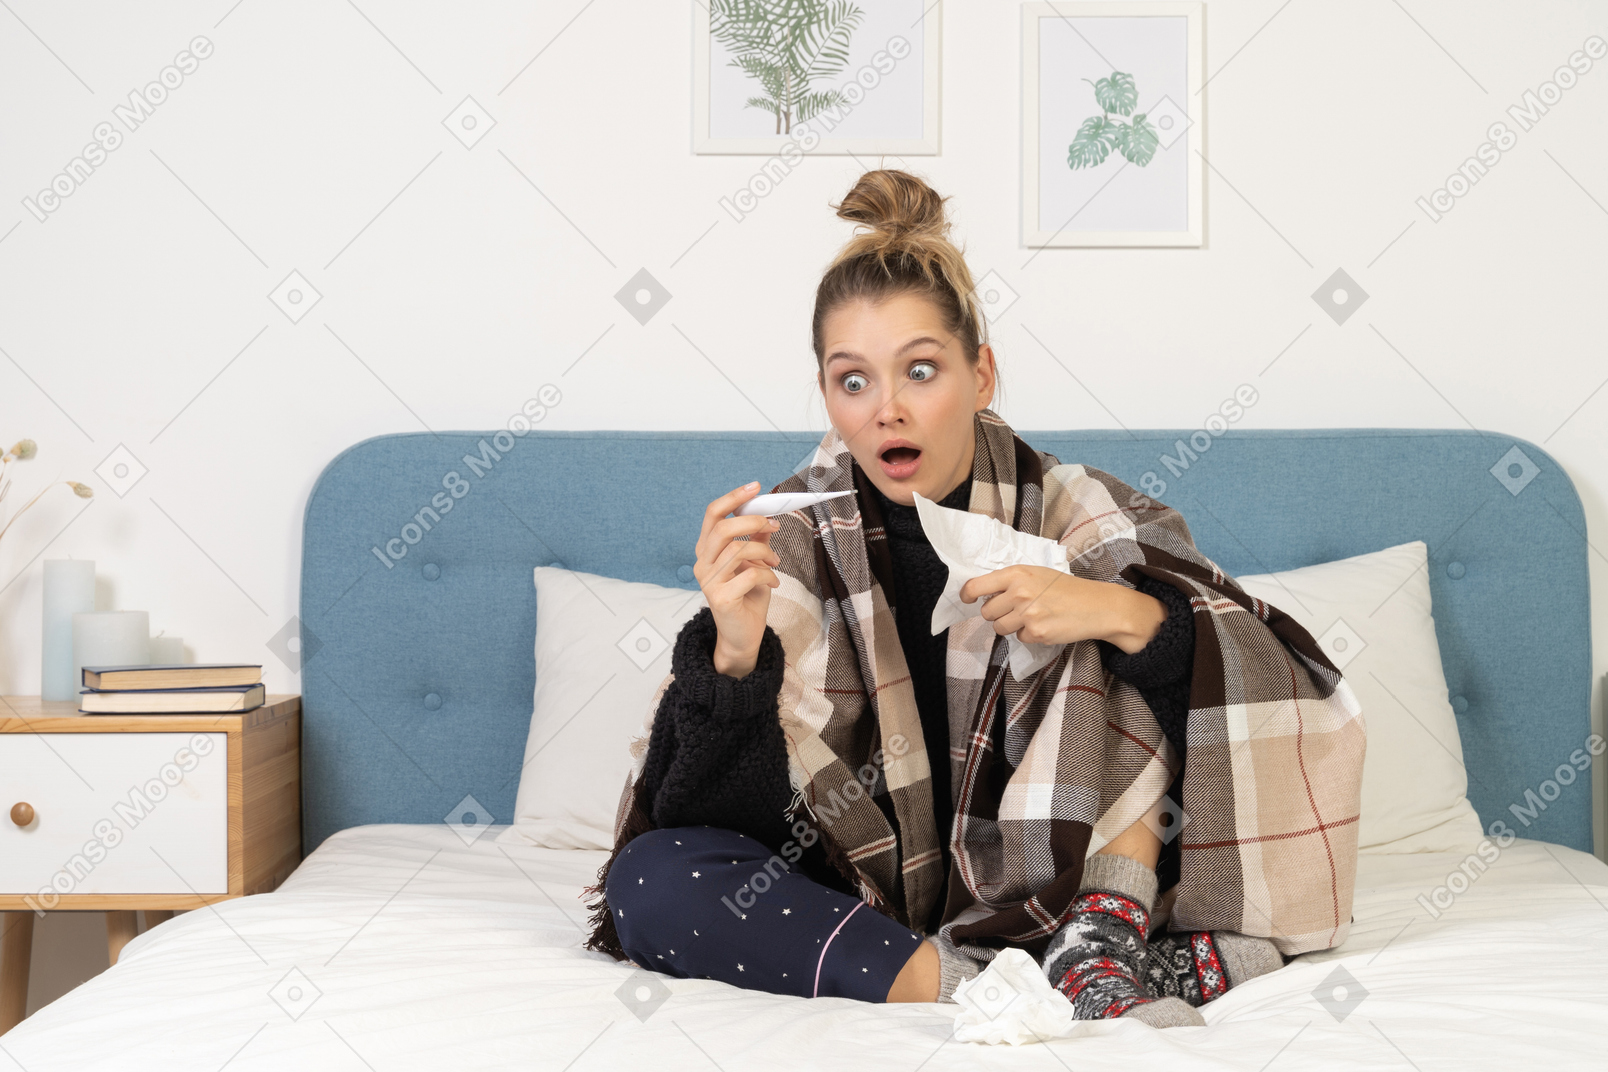 Вид спереди потрясенной больной молодой женщины в пижаме, завернутой в клетчатое одеяло, проверяющей ее температуру